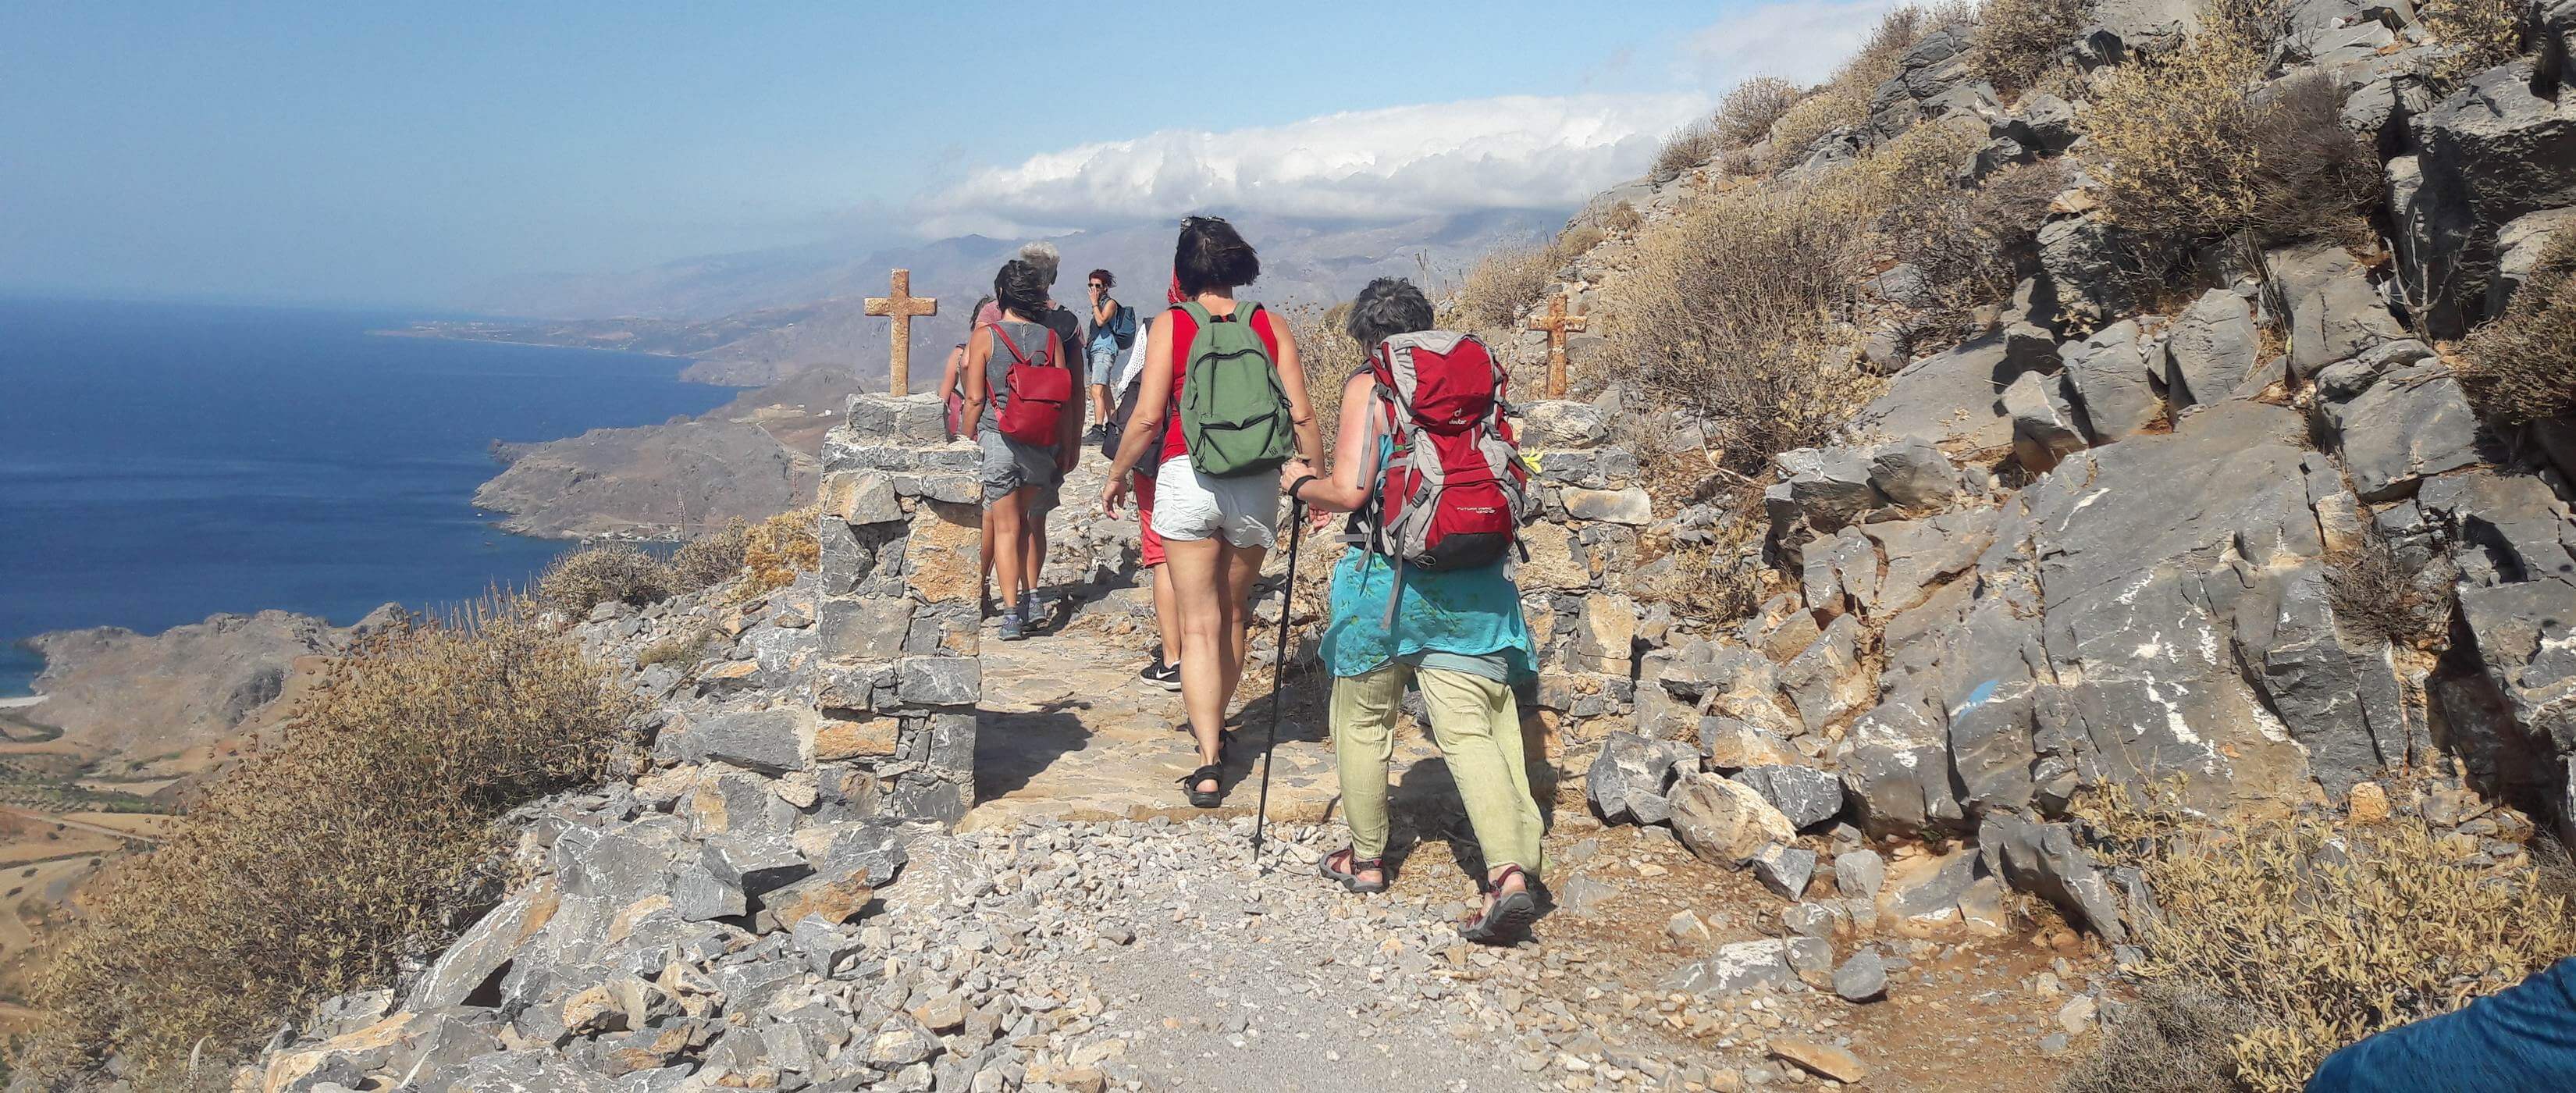 Foto: Wandertour mit Panoramablick an der kretischen Sdkste - Lupe Reisen